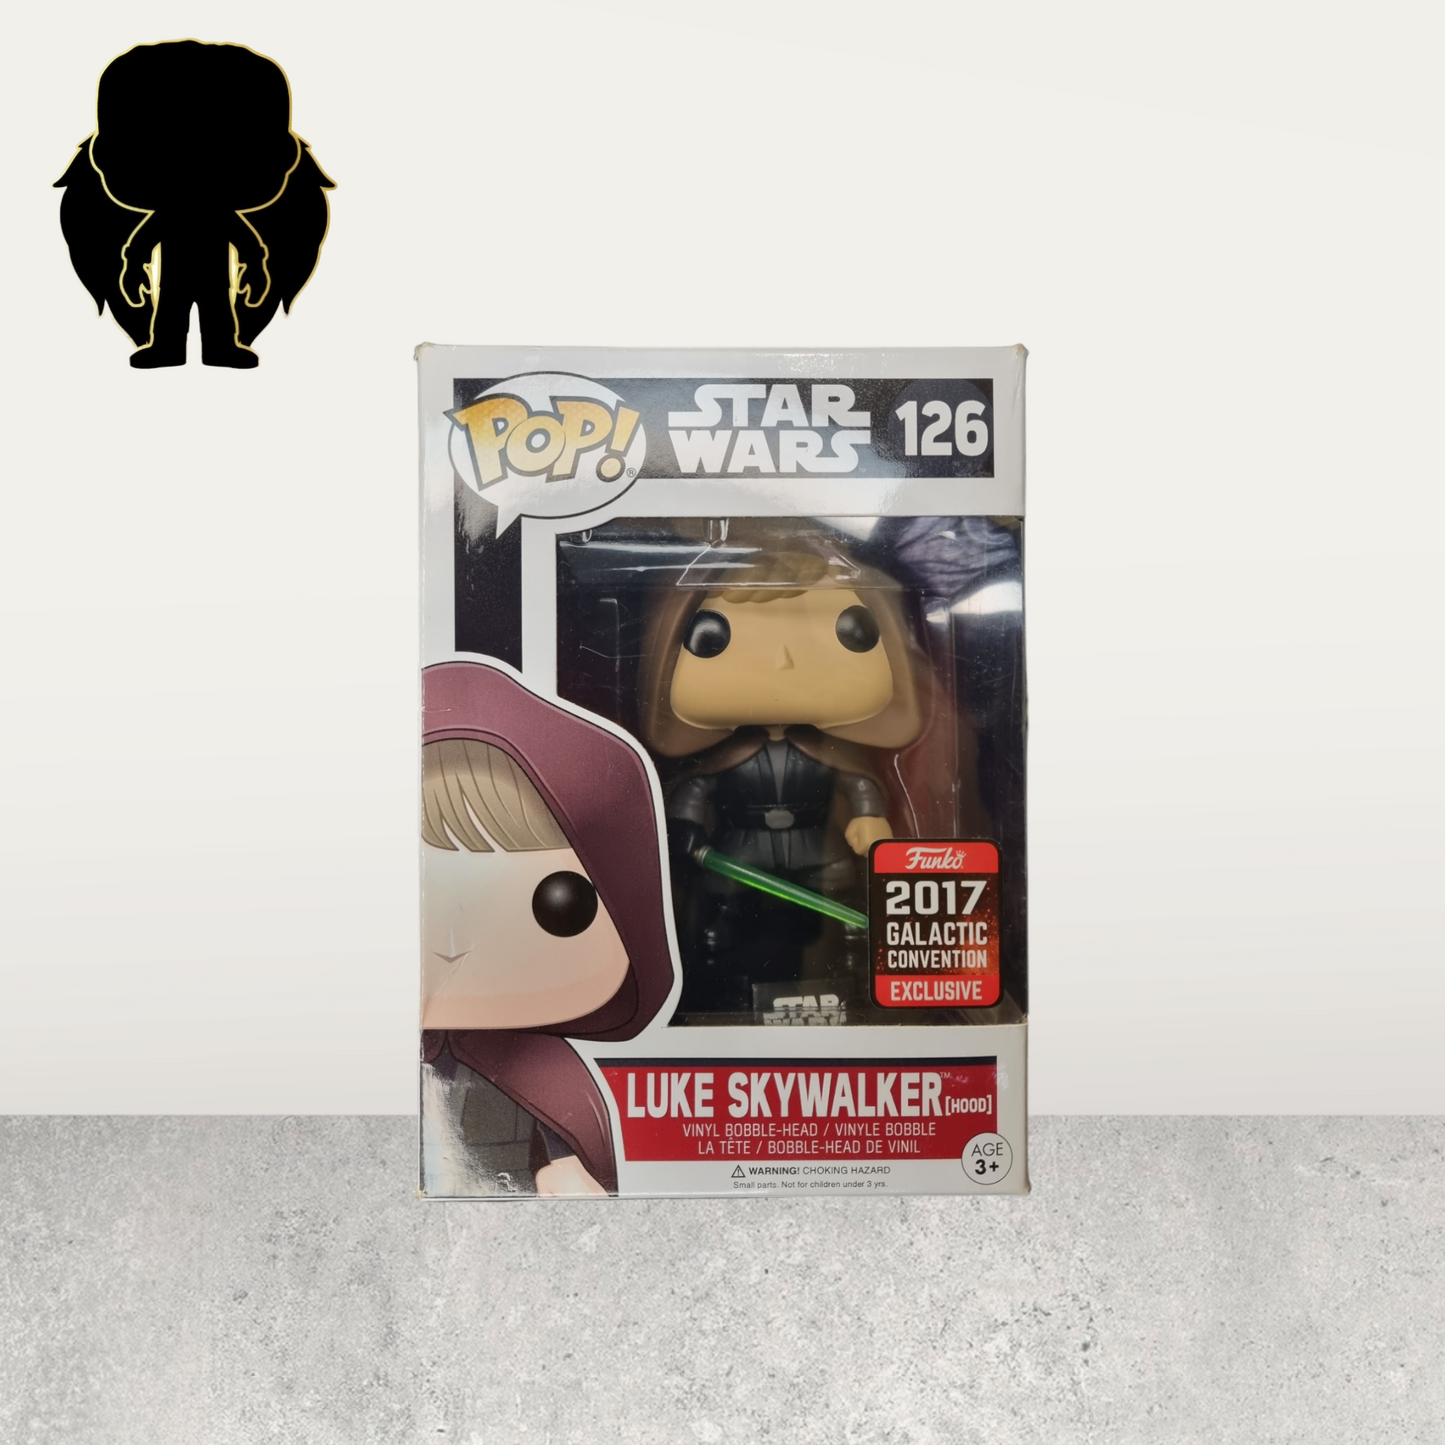 Star Wars - Luke Skywalker (Hood) 126